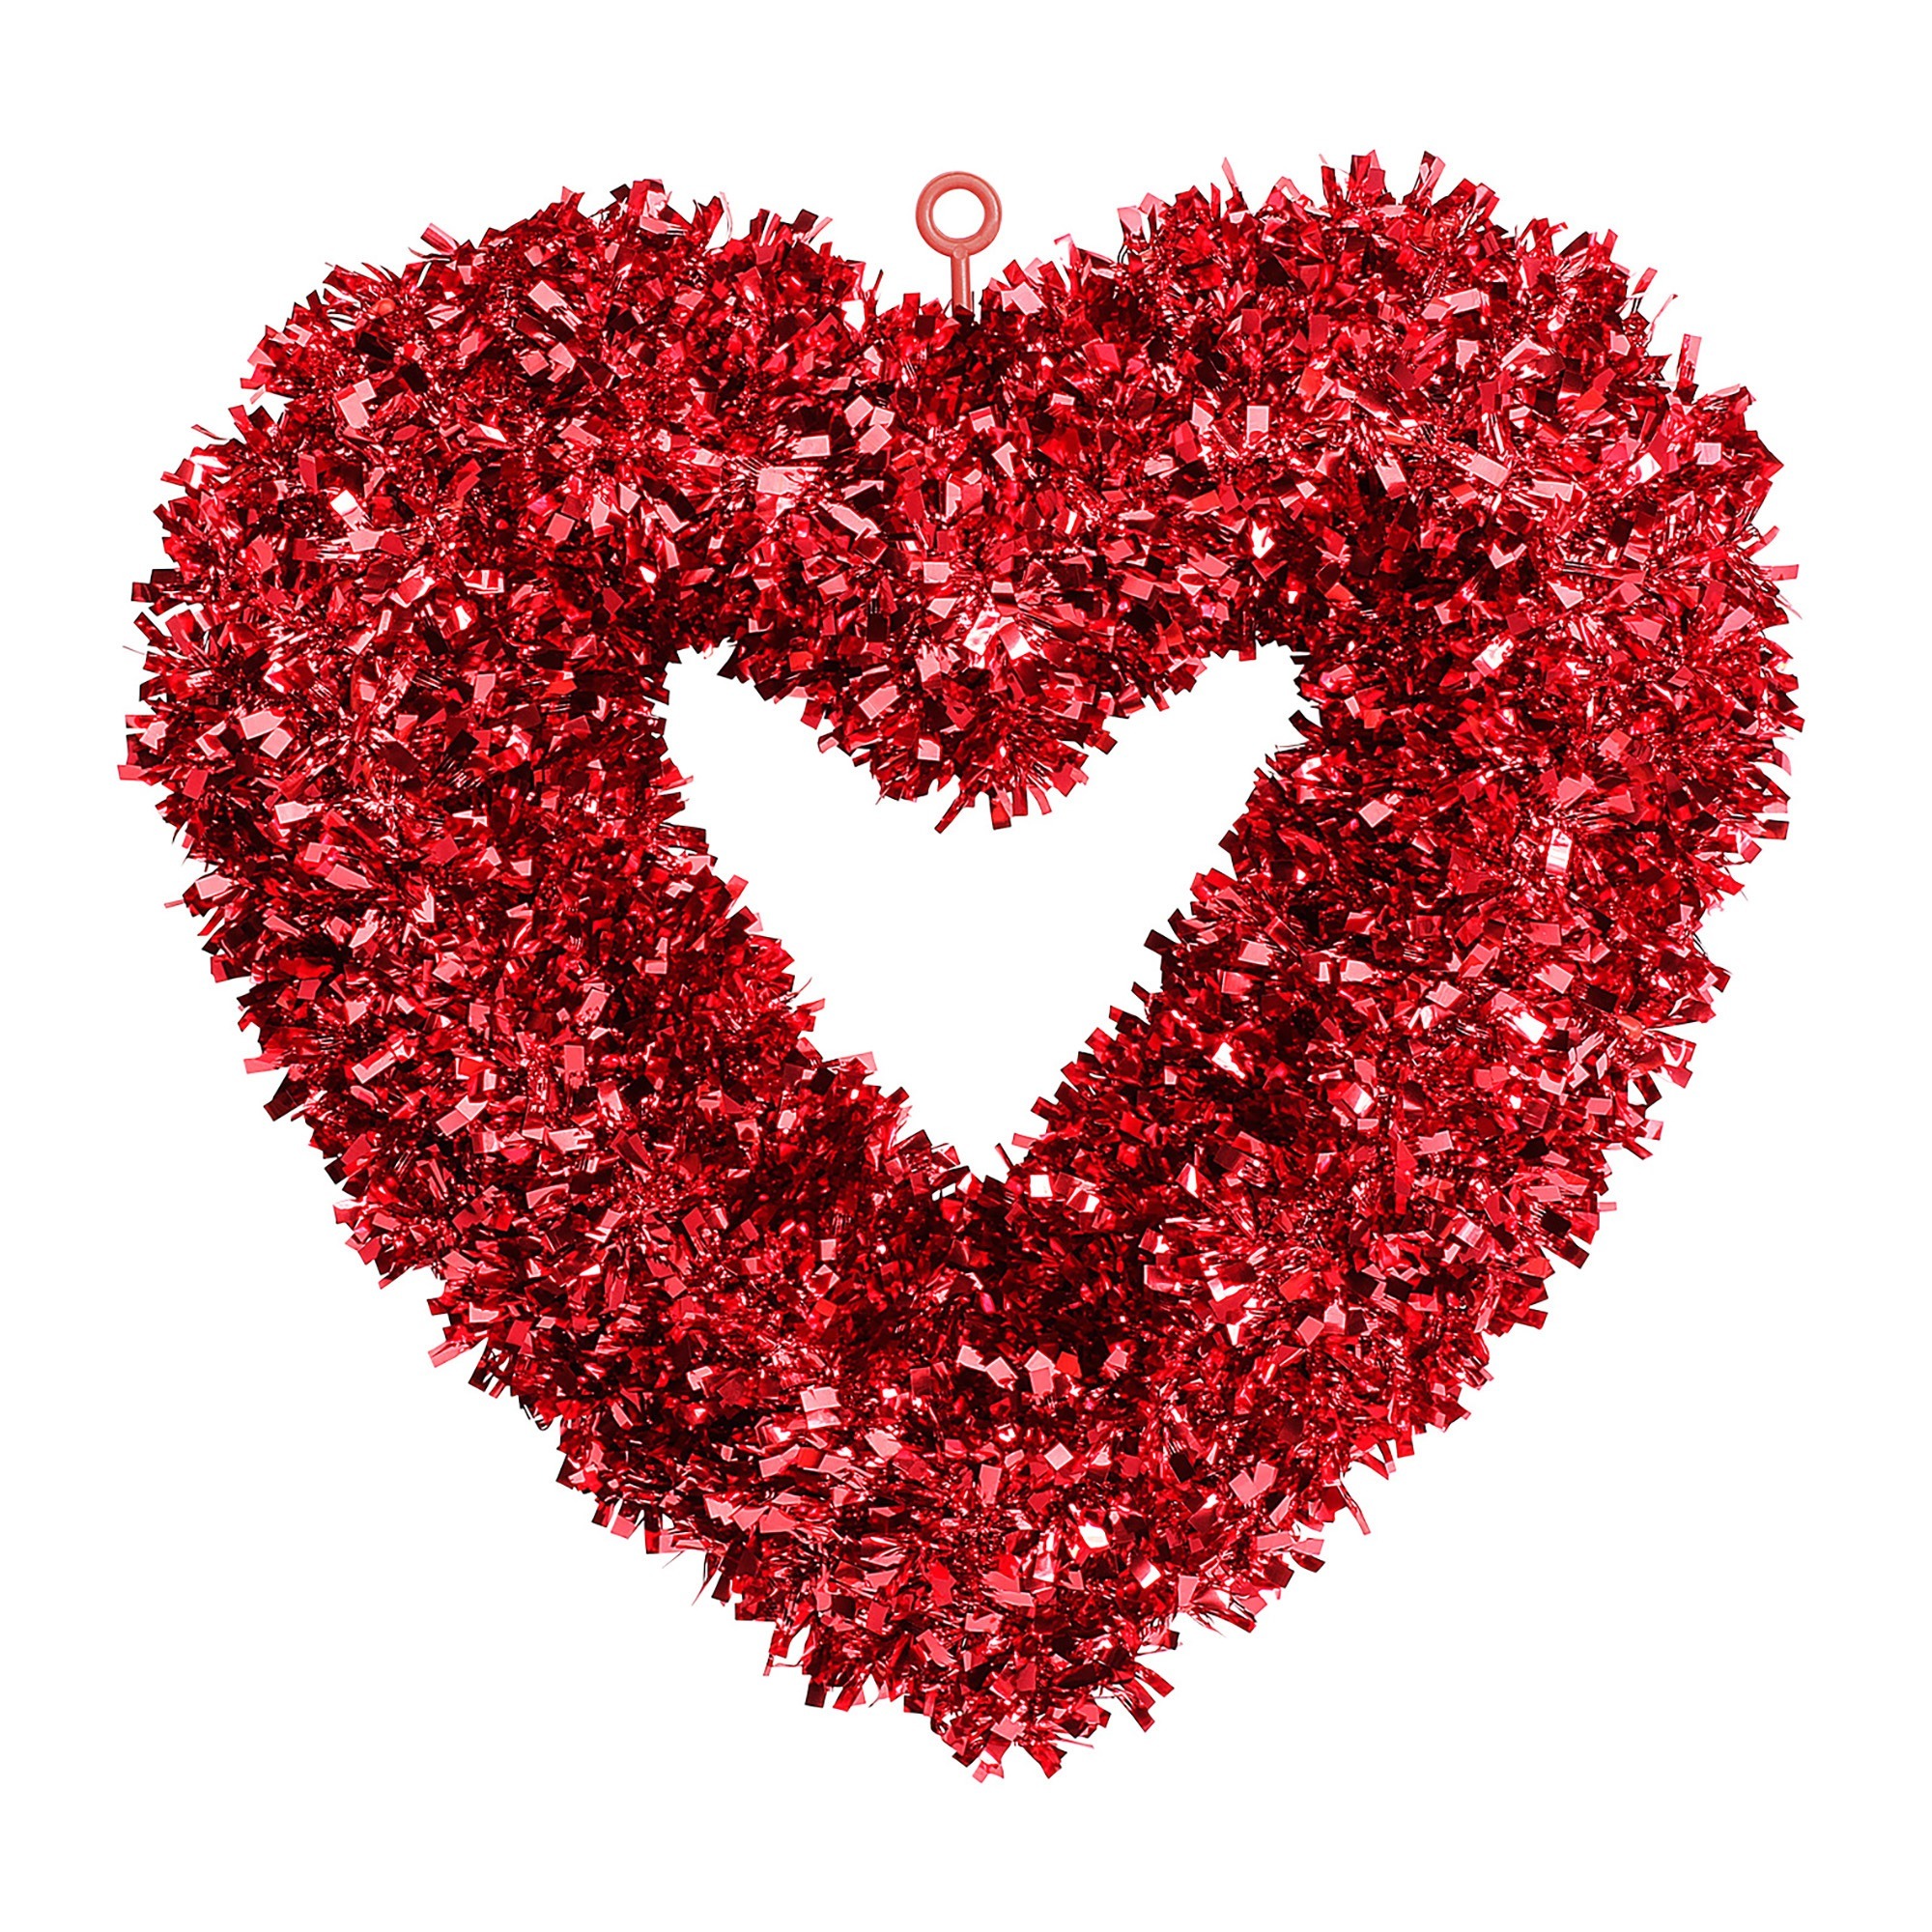 Valentijns hart  rood 46 x 44 cm  leuke decoratie  voor huwelijk of valentijn